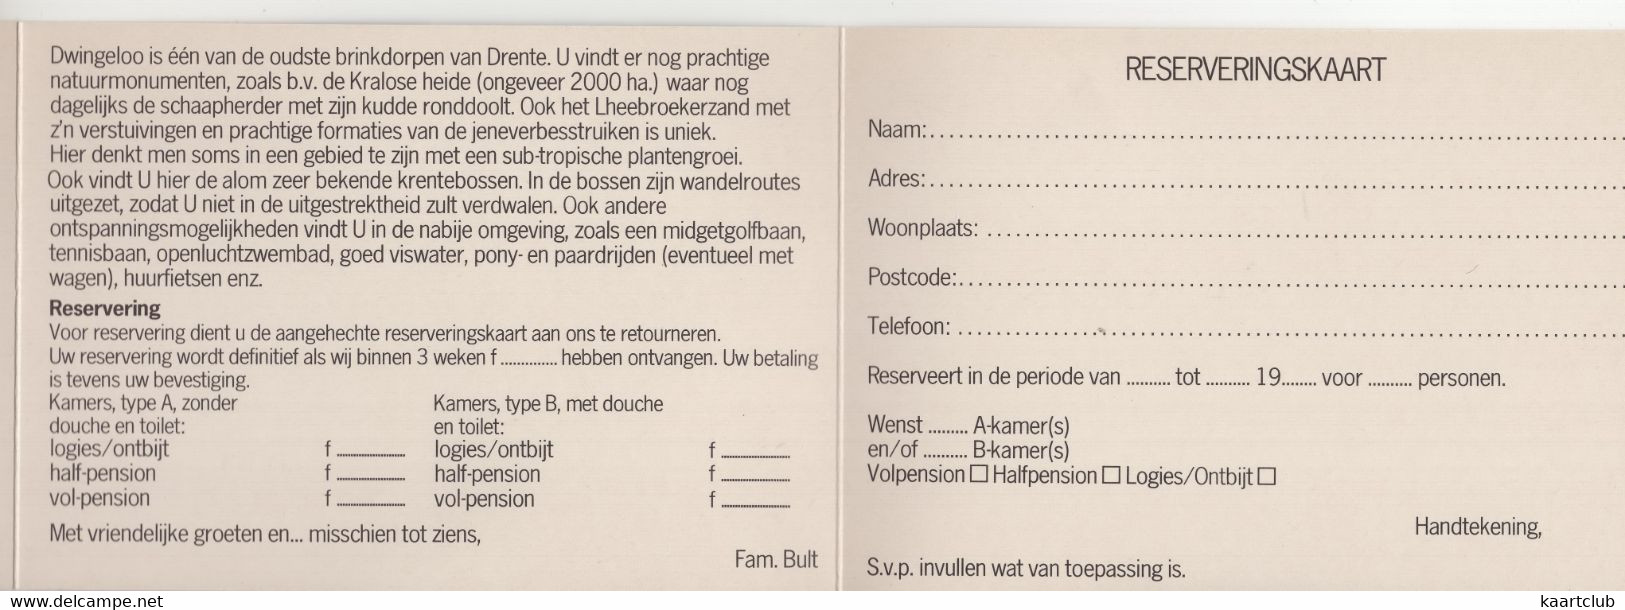 Dwingeloo - Bonds-Hotel 'De Drift', Drift 3-4 : FORD CONSUL/GRANADA - (Drenthe) - 3x 15cm X 10.5cm - Dwingeloo